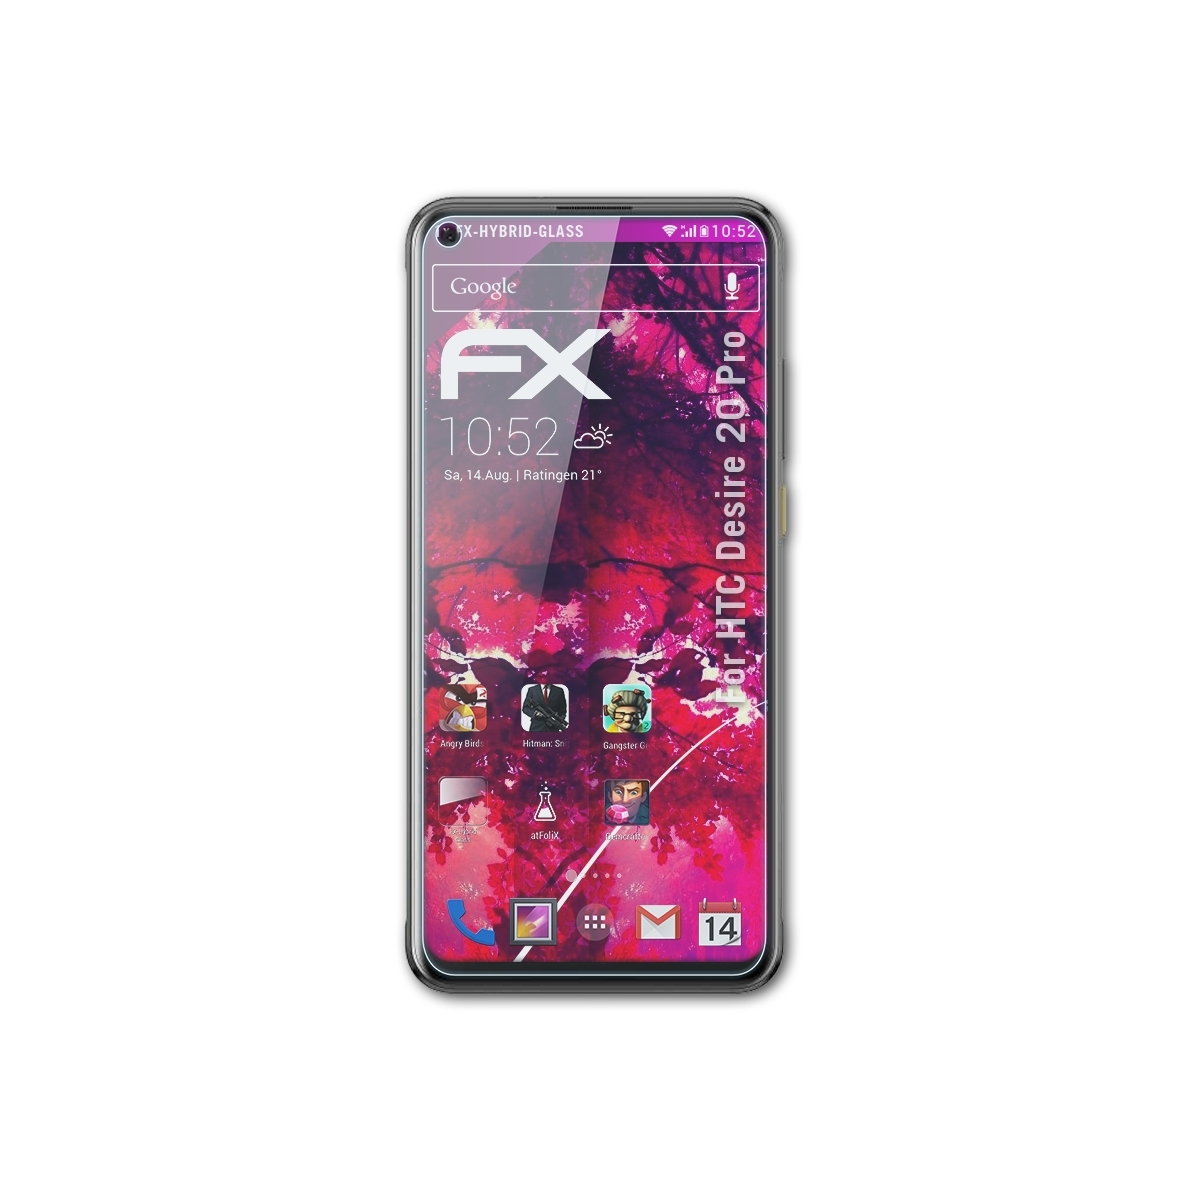 FX-Hybrid-Glass 20 Desire ATFOLIX Pro) HTC Schutzglas(für